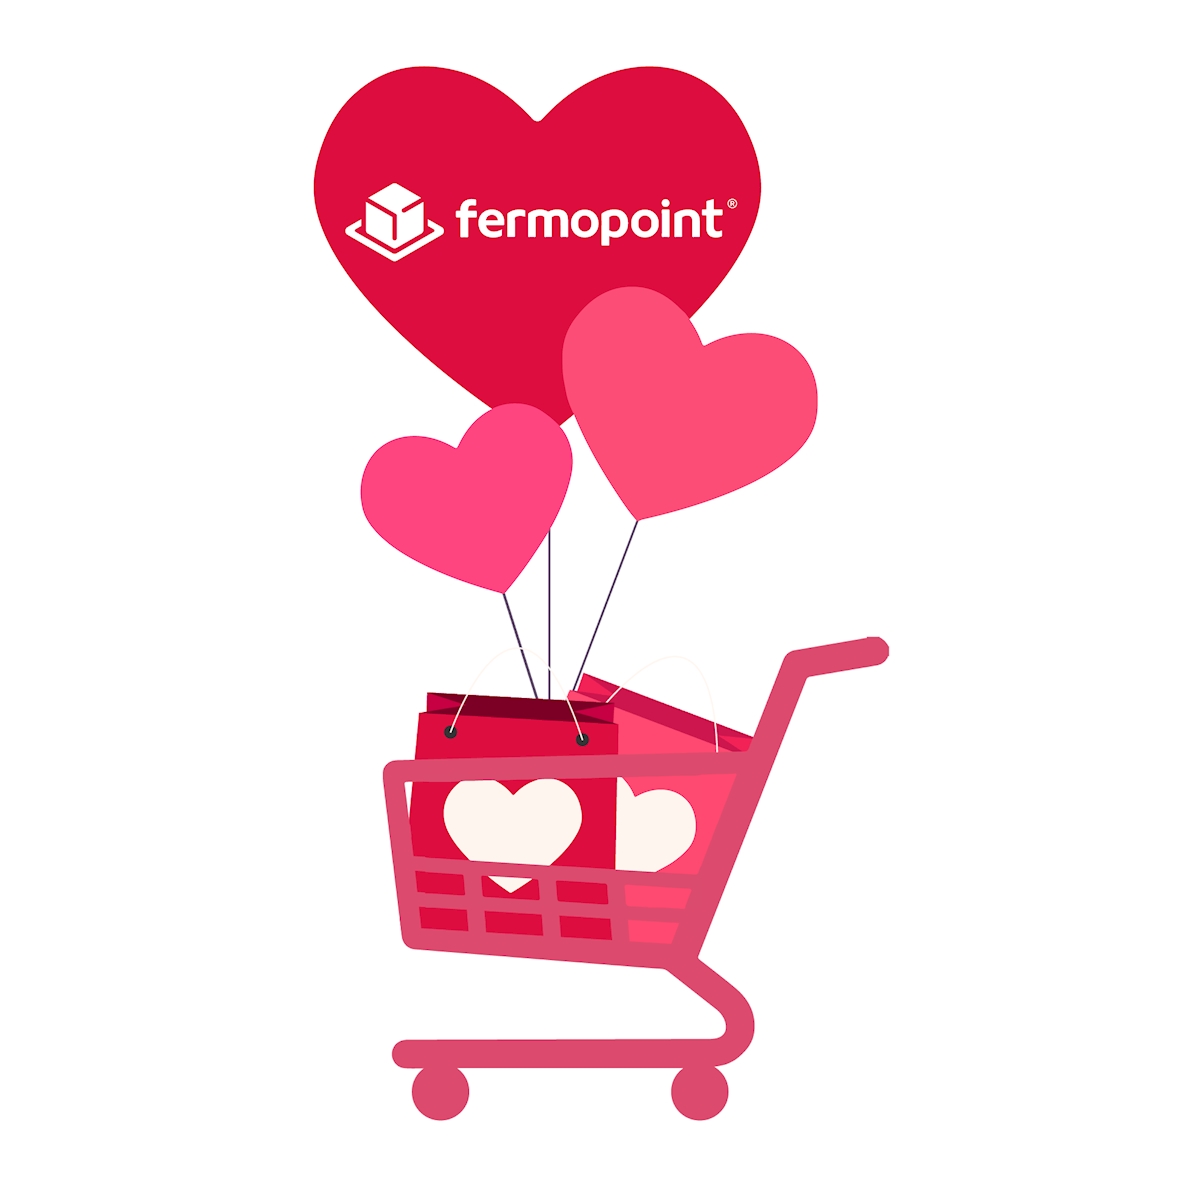 Immagine San Valentino 2019: gli acquisti online vincono anche in amore